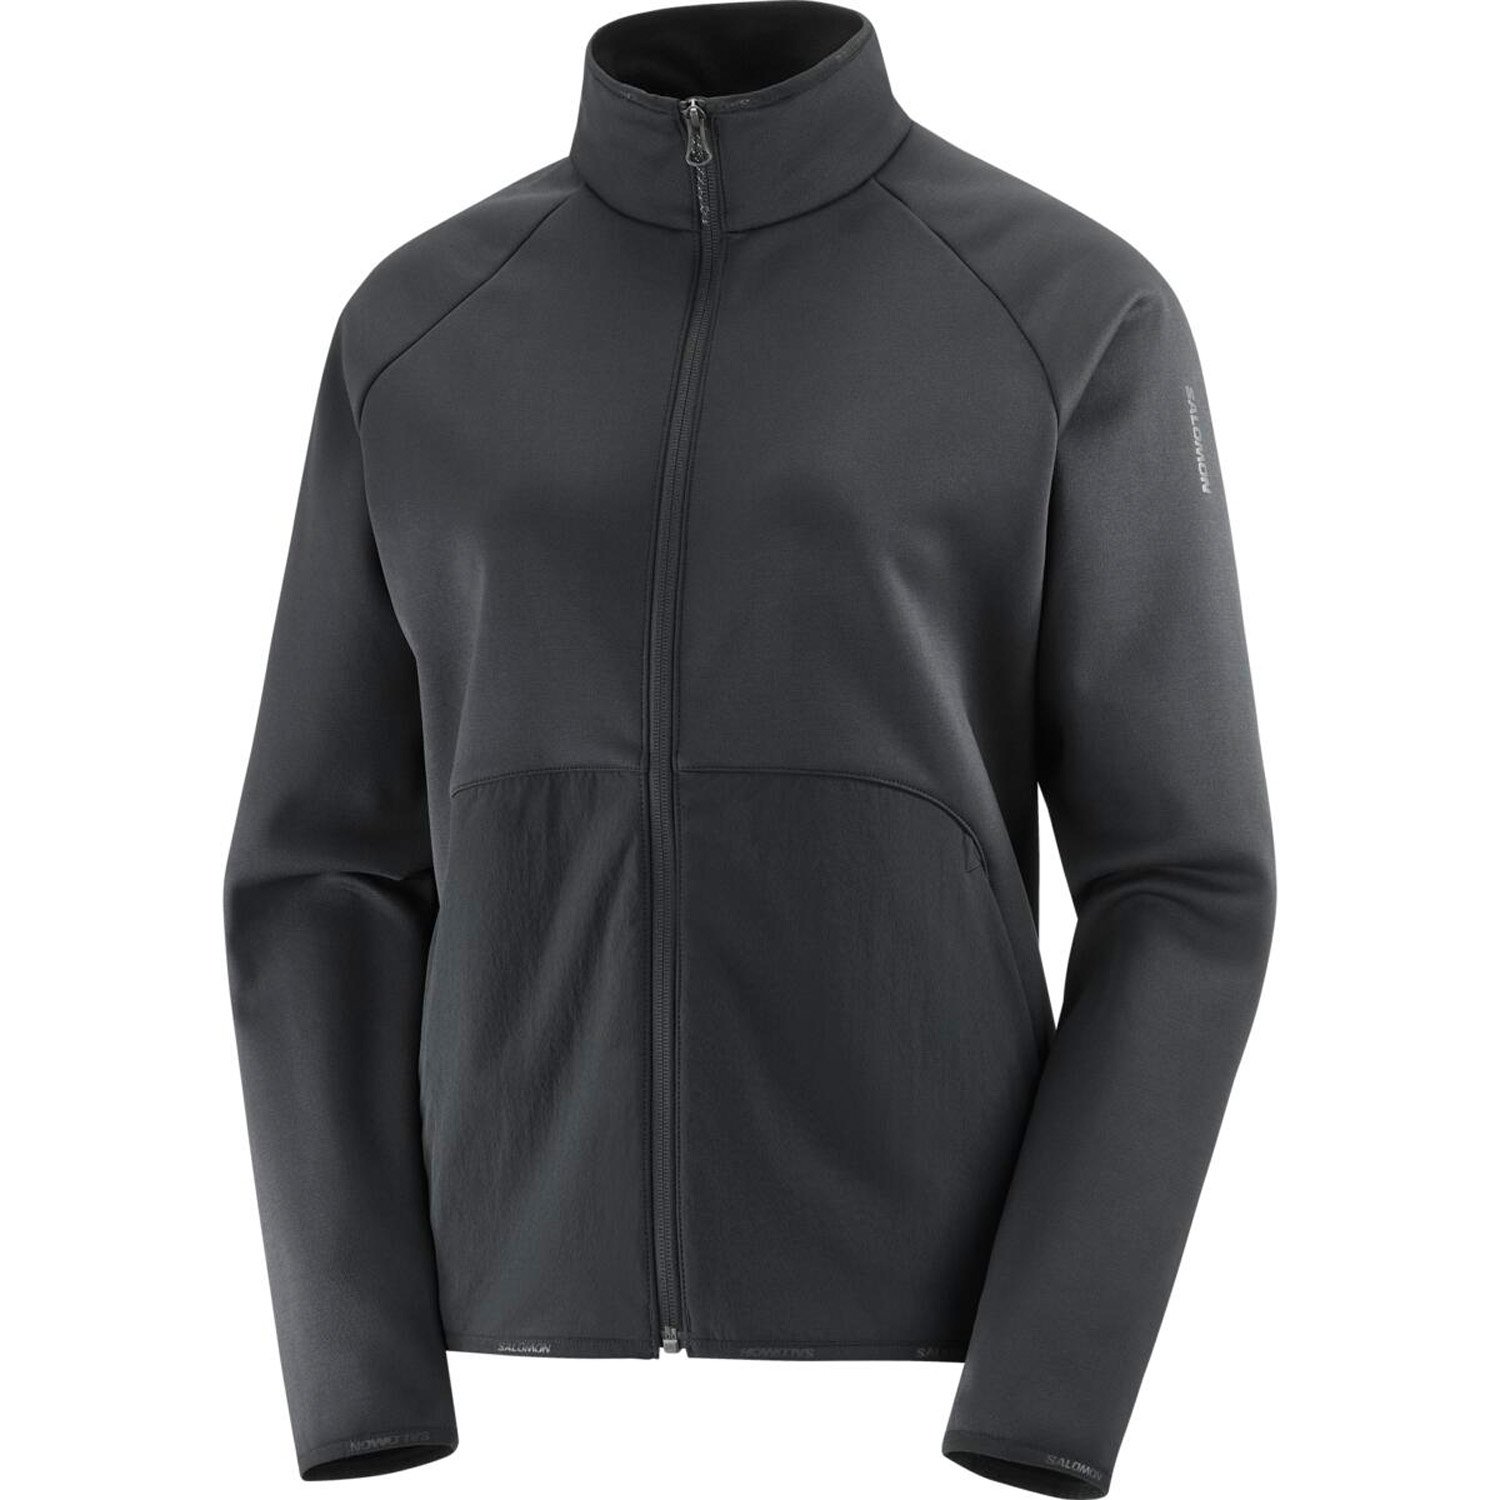 Salomon Sntial Warm Kadın Outdoor Fleece Ceket - Siyah - 1